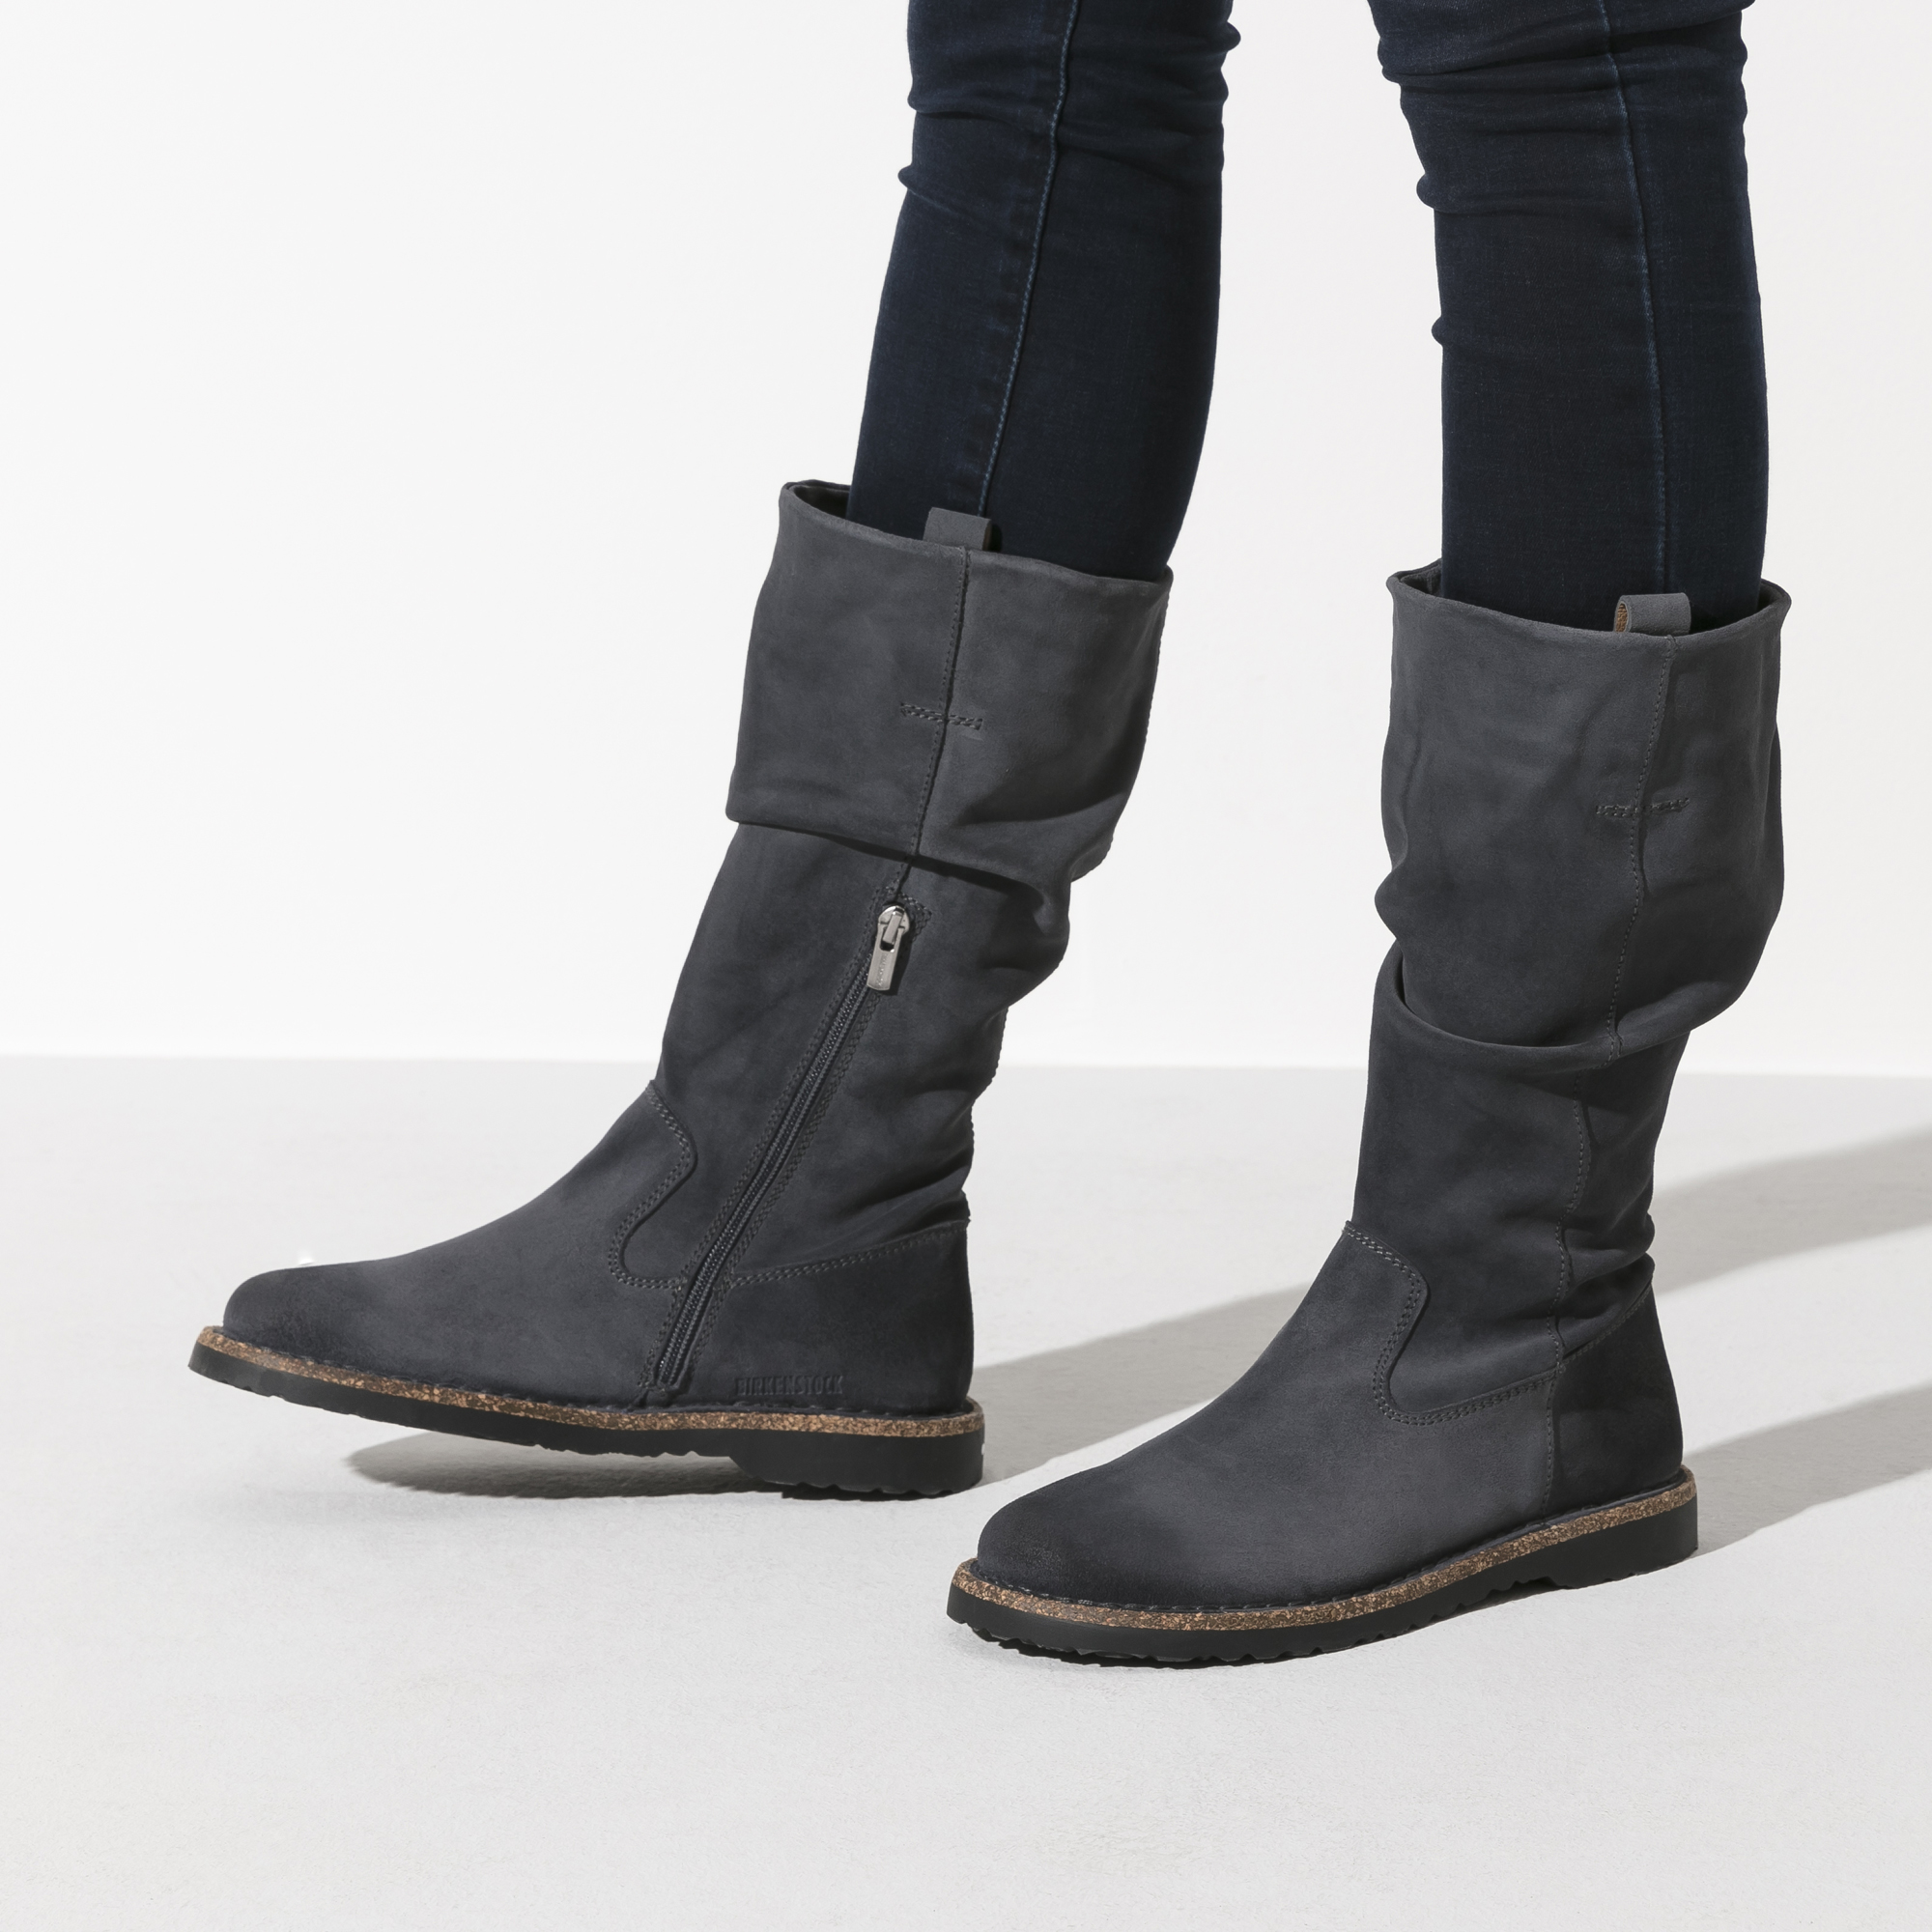 birkenstock luton boots